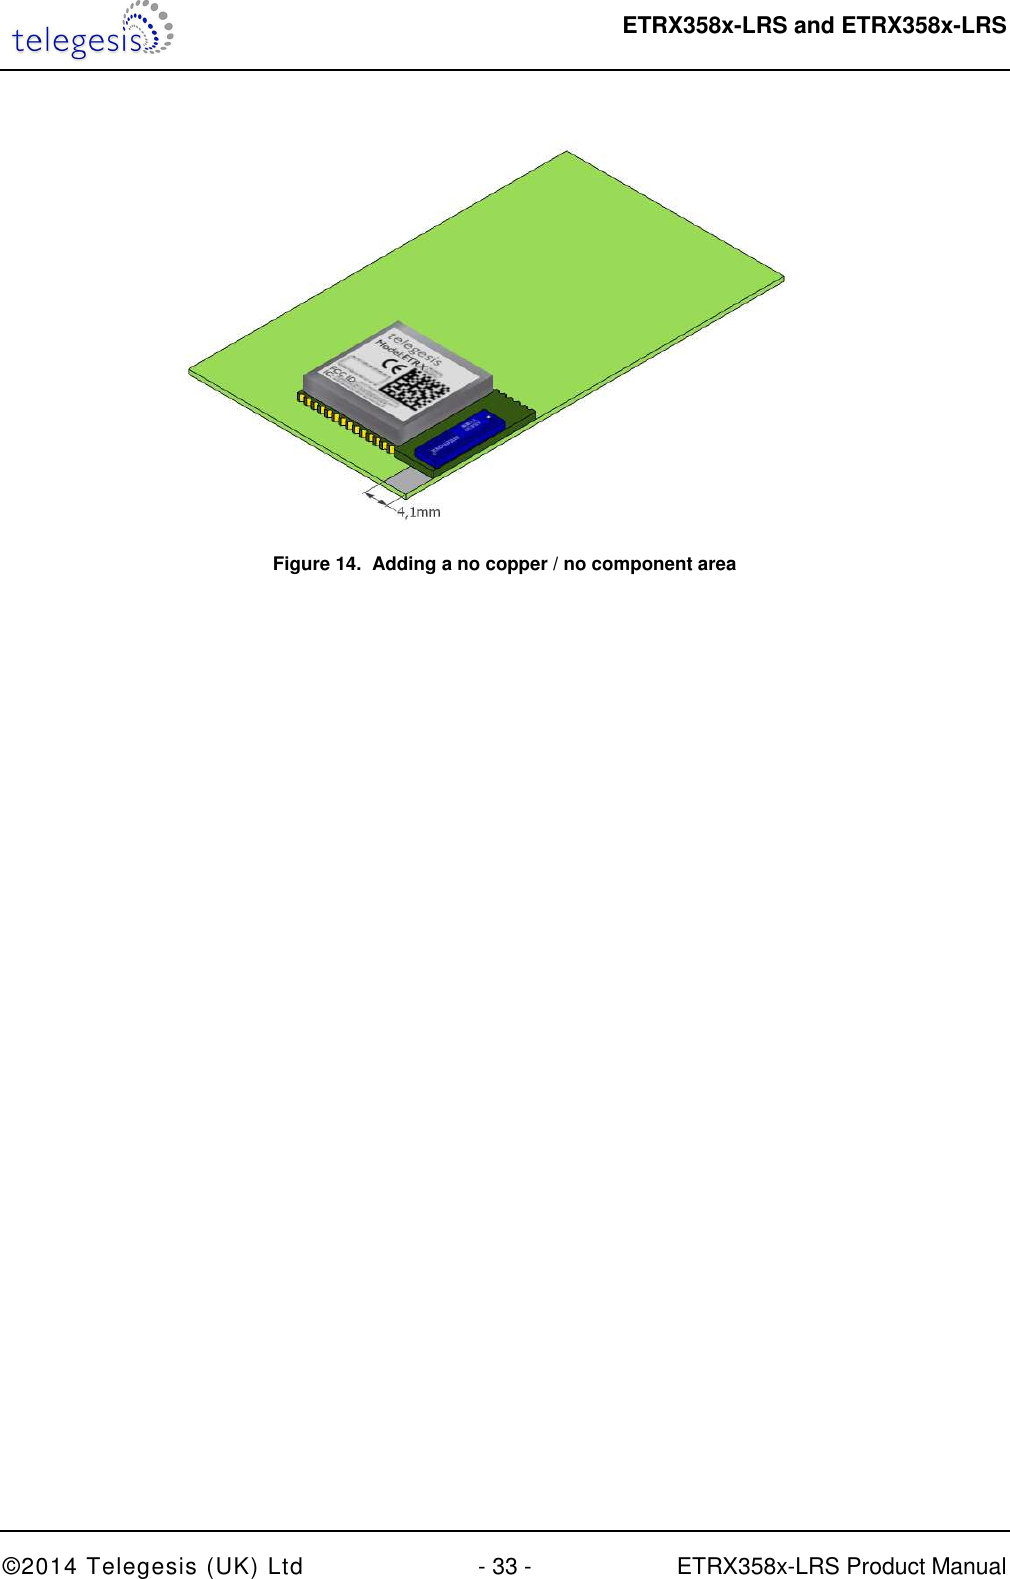  ETRX358x-LRS and ETRX358x-LRS  ©2014 Telegesis (UK) Ltd  - 33 -  ETRX358x-LRS Product Manual  Figure 14.  Adding a no copper / no component area  